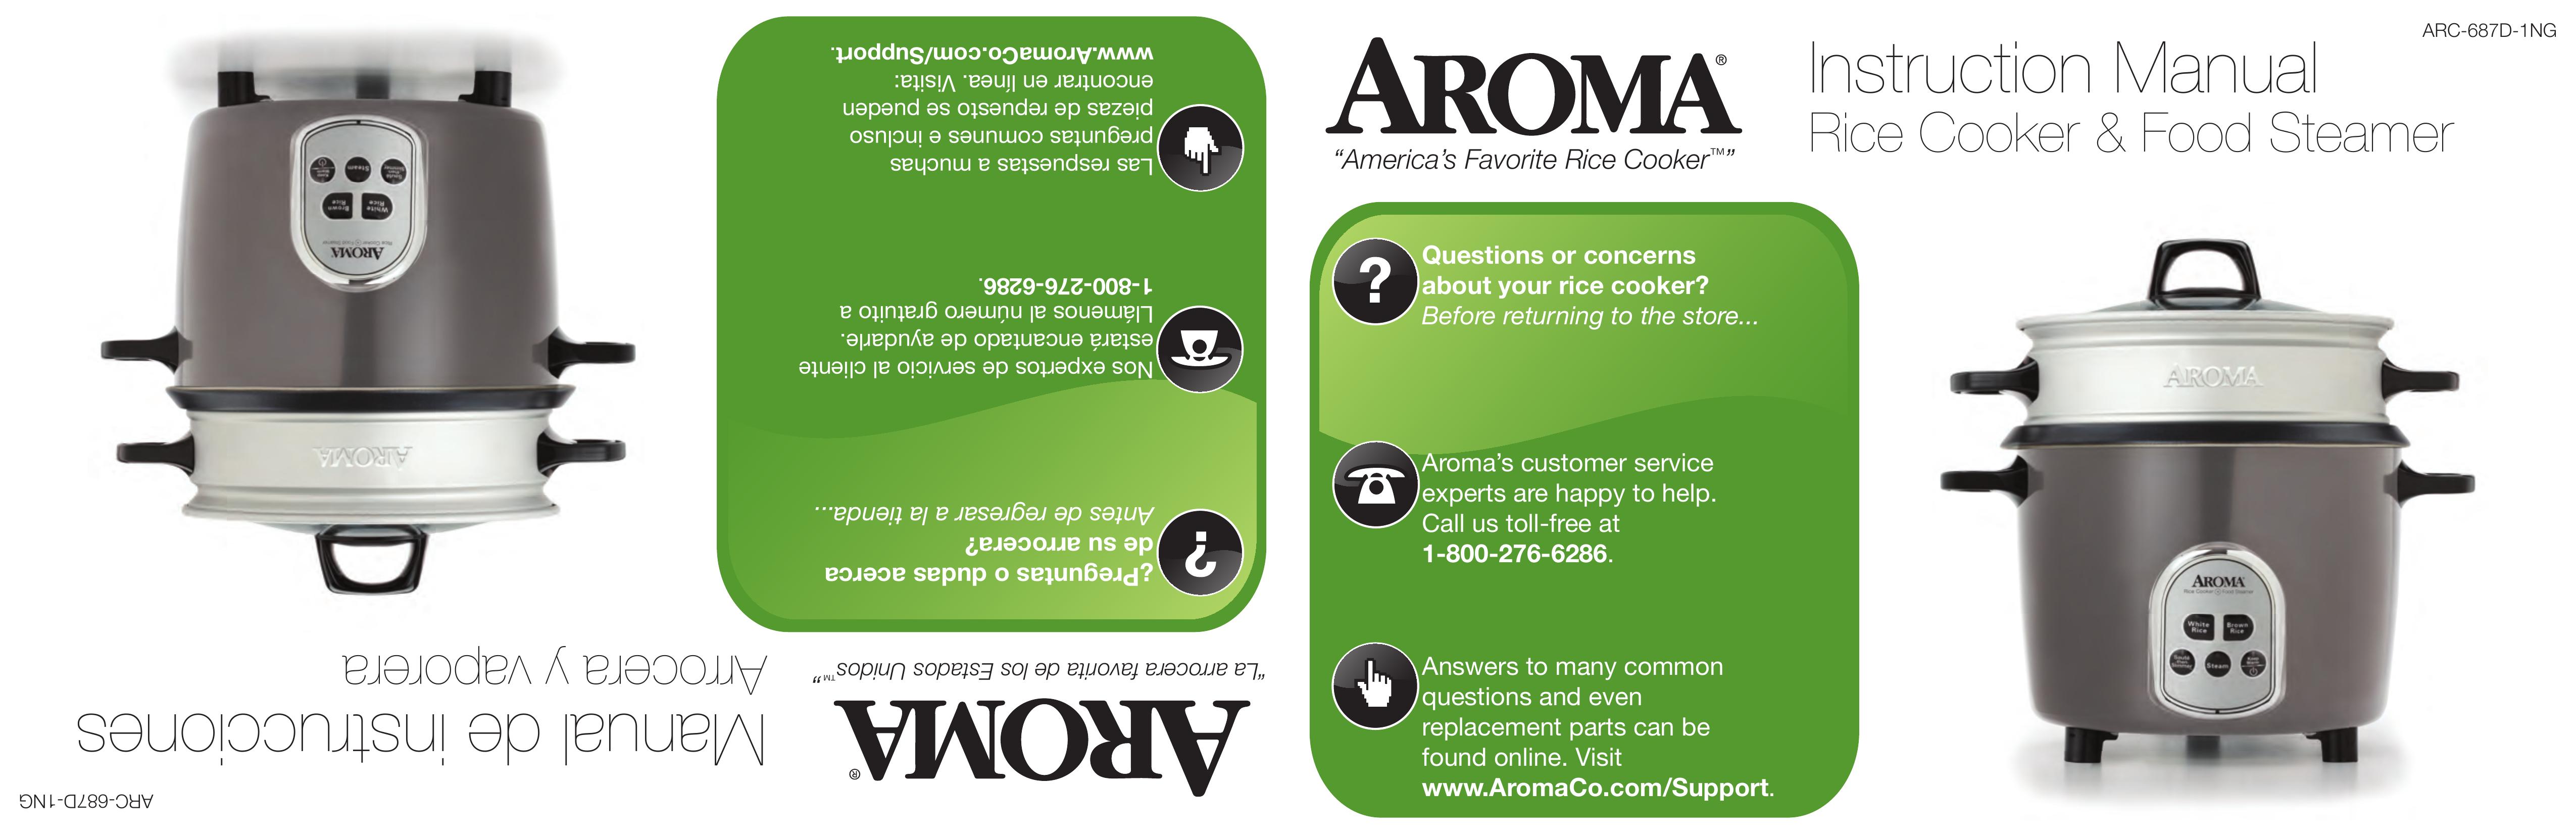 Aroma ARC-687D-1NG Rice Cooker User Manual